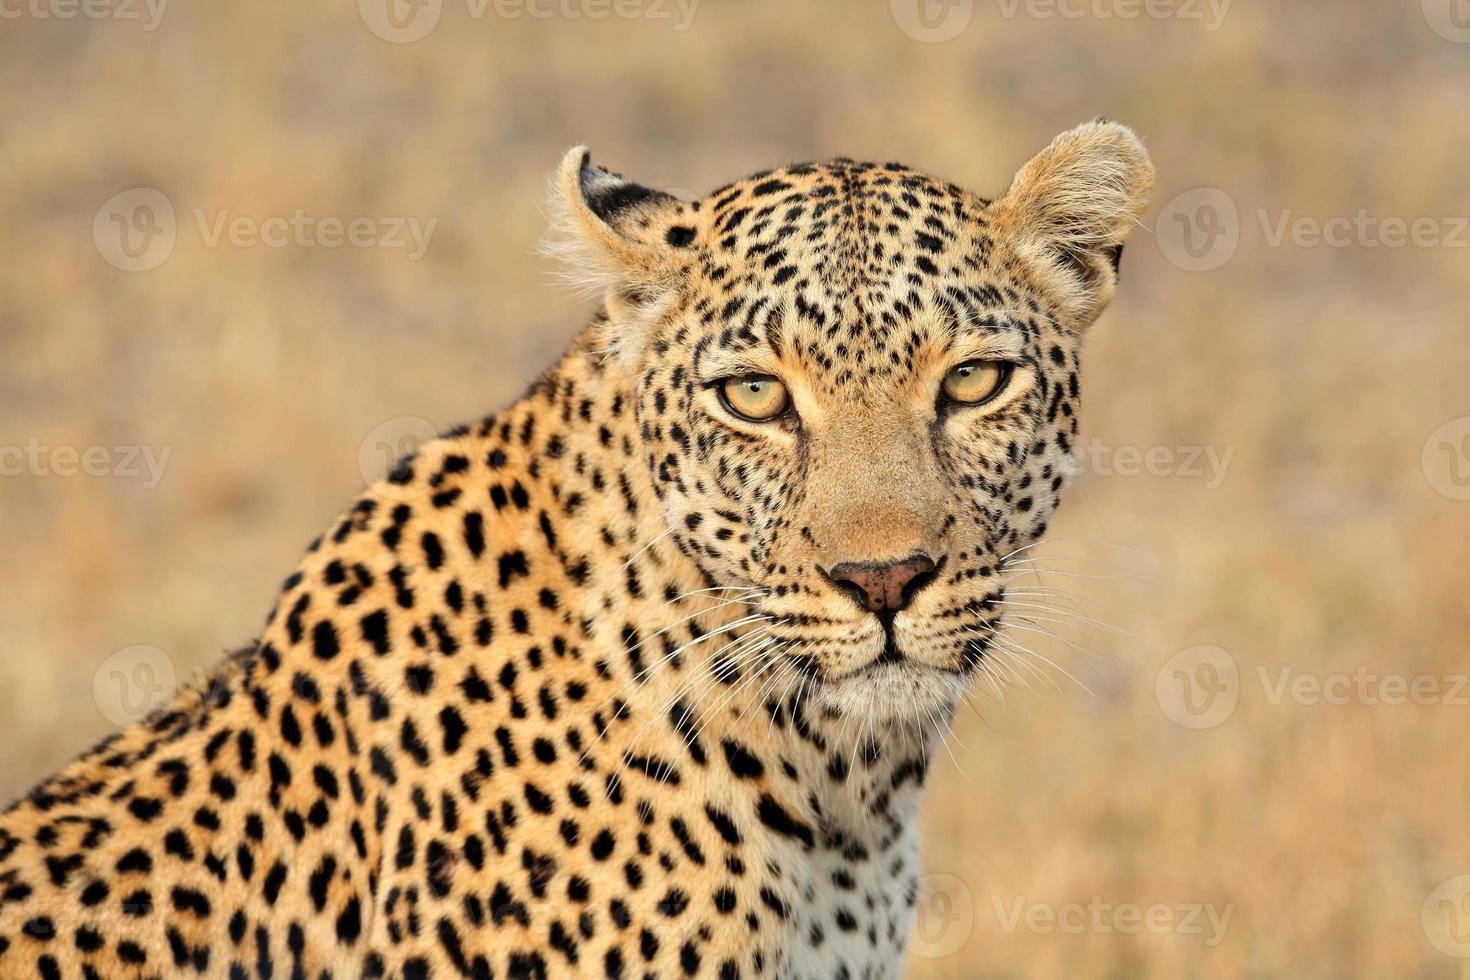 Leopard portrait photo